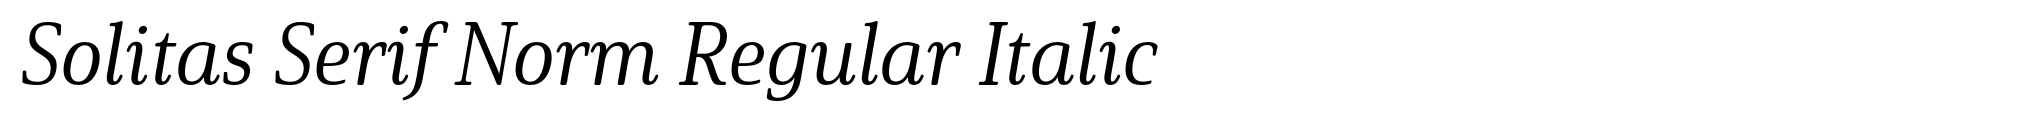 Solitas Serif Norm Regular Italic image